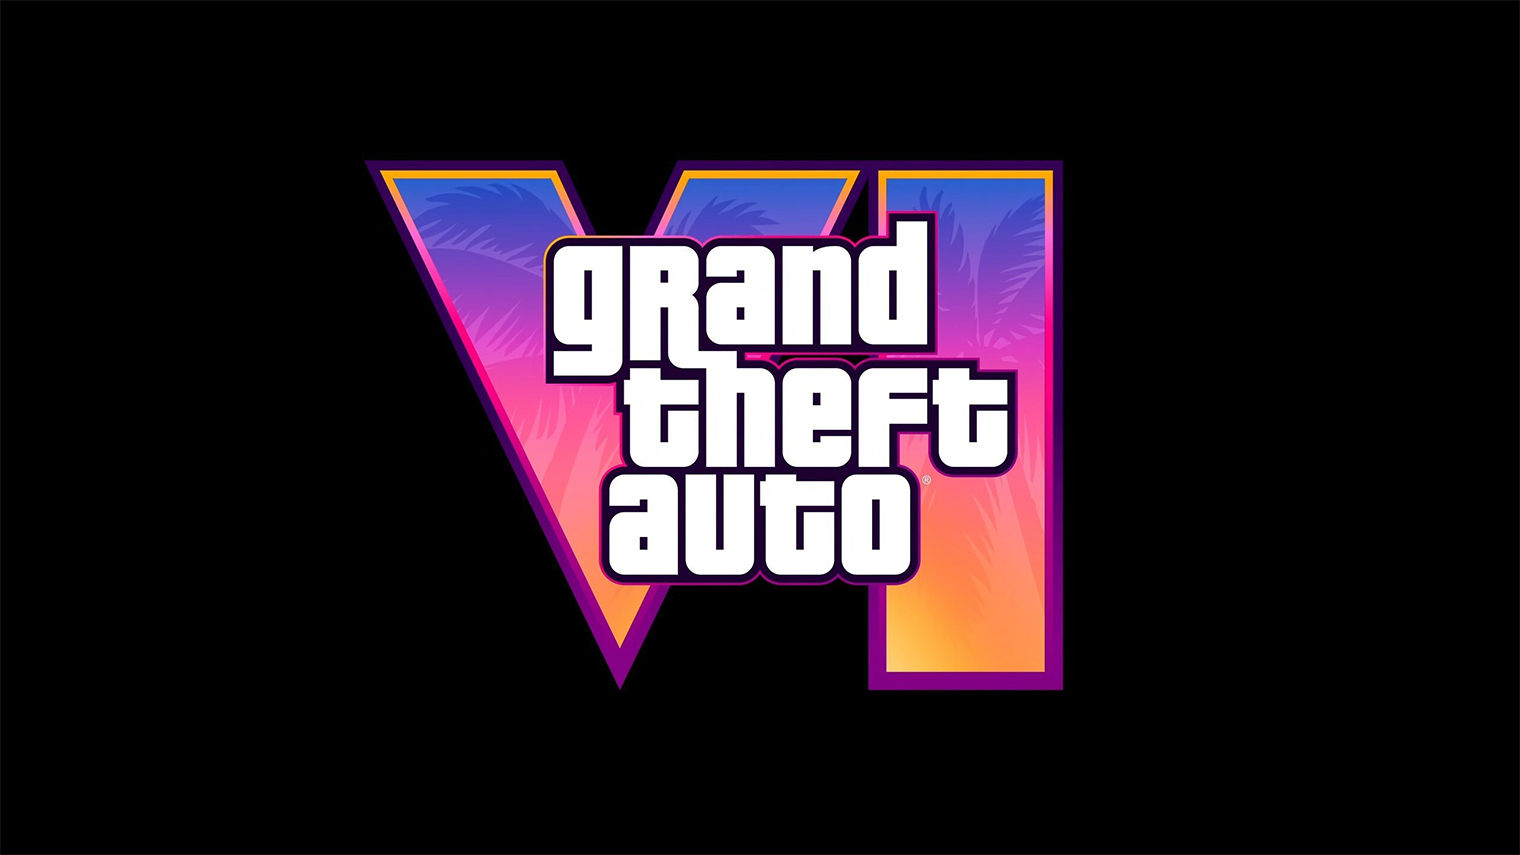 Официальный логотип шестой части. Rockstar Games не могла не обыграть римское обозначение, которое созвучно с Vice City